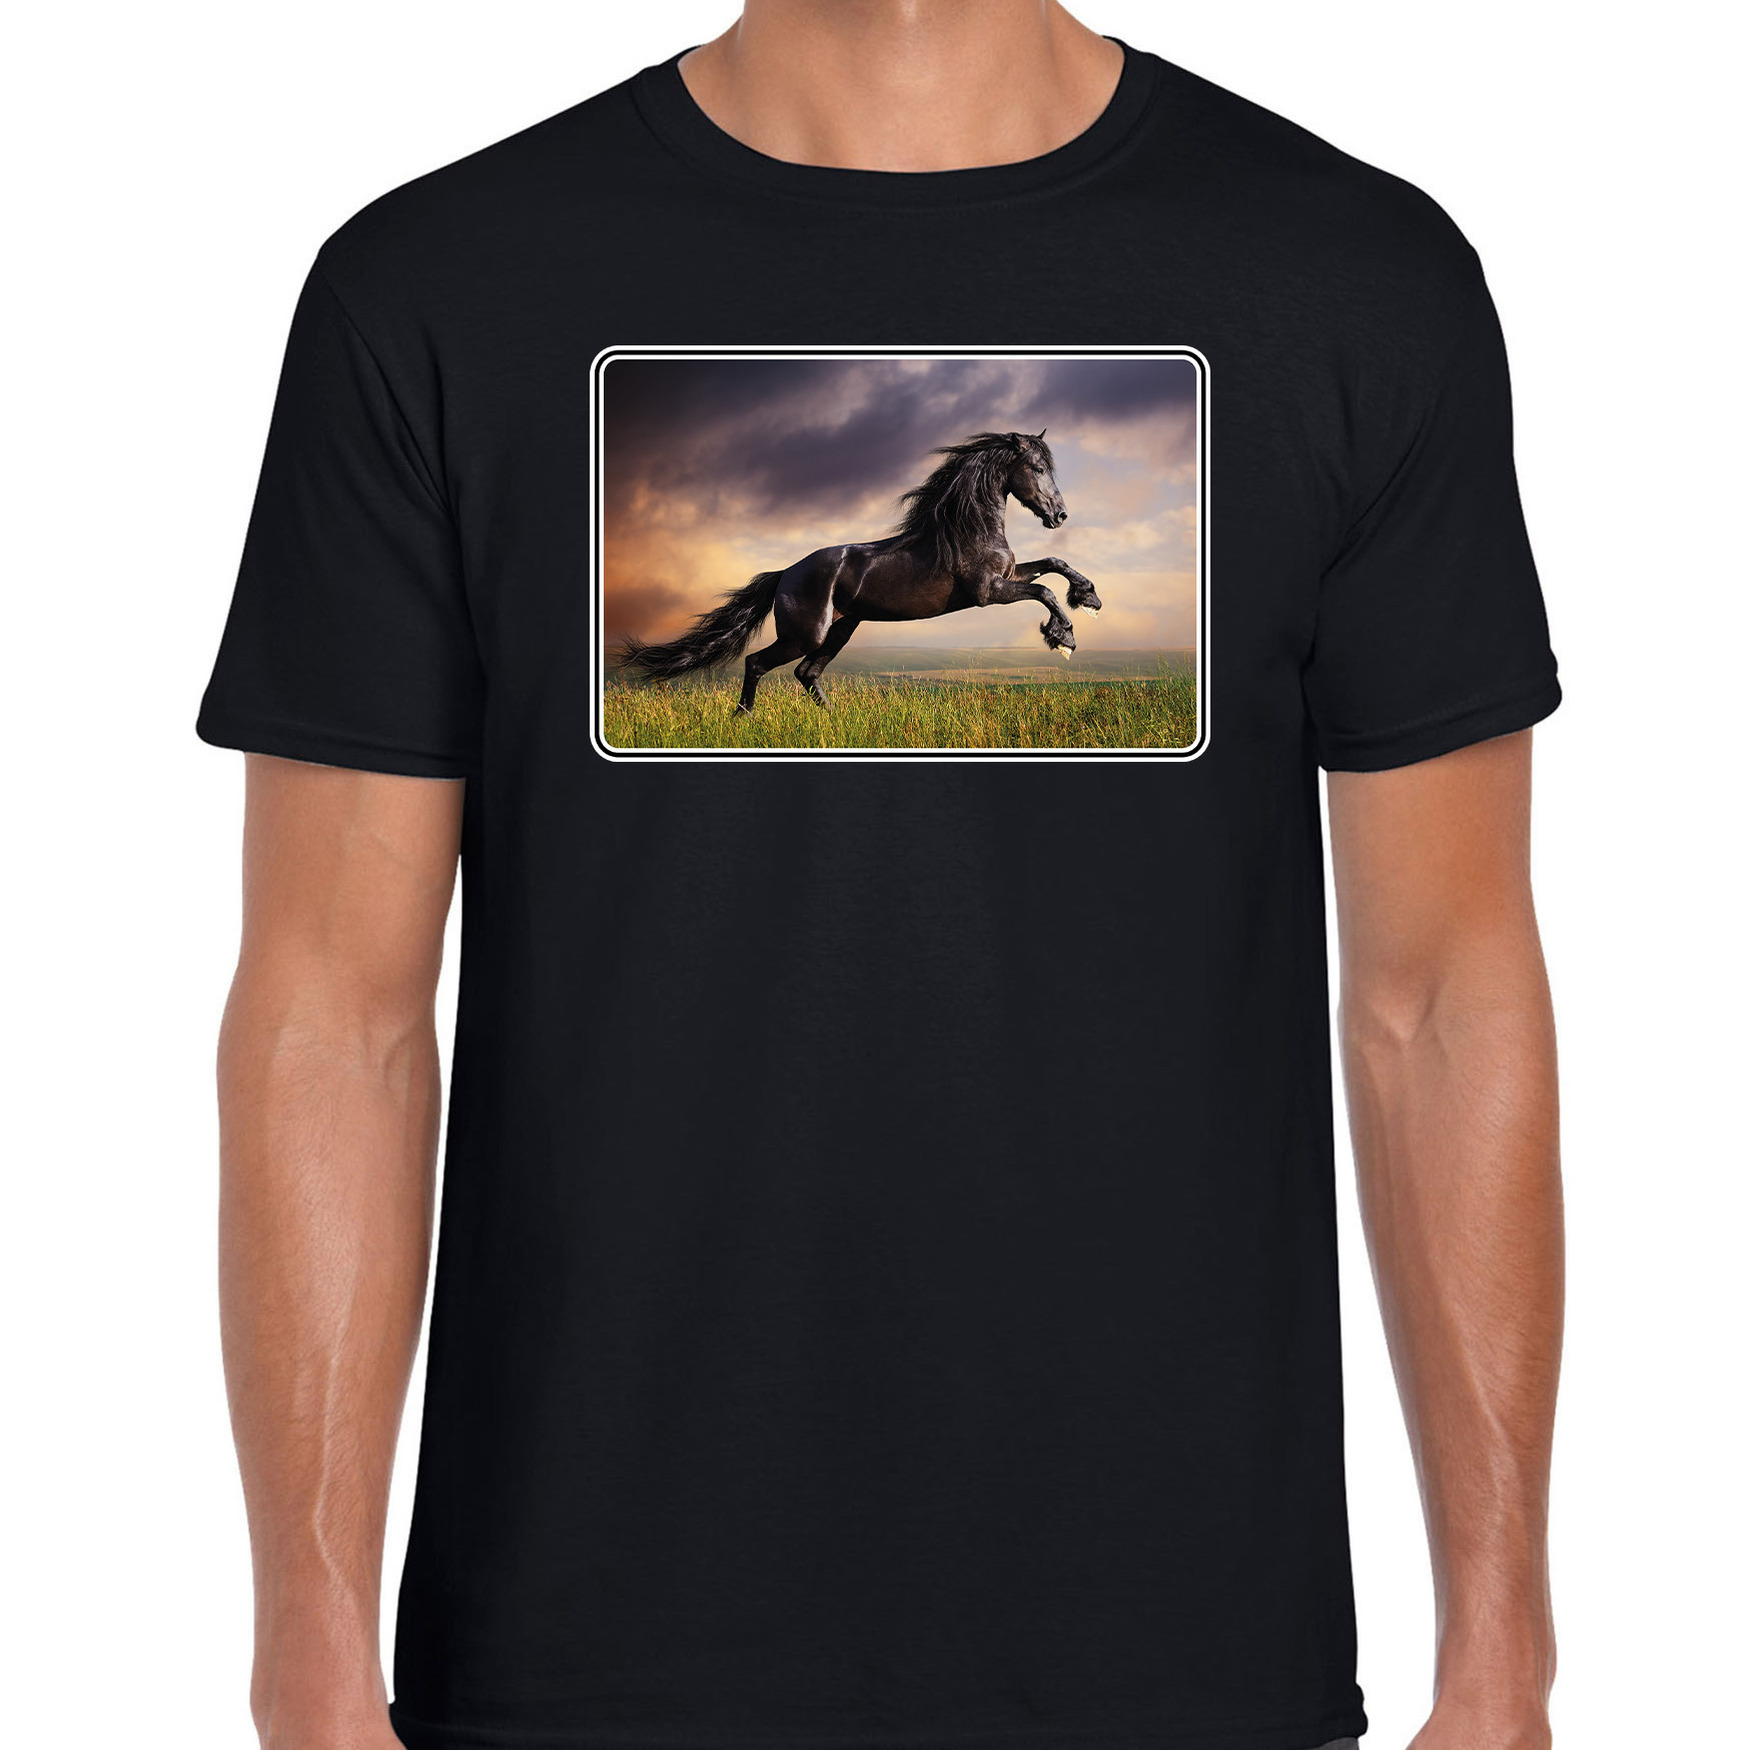 Dieren t-shirt met paarden foto zwart voor heren